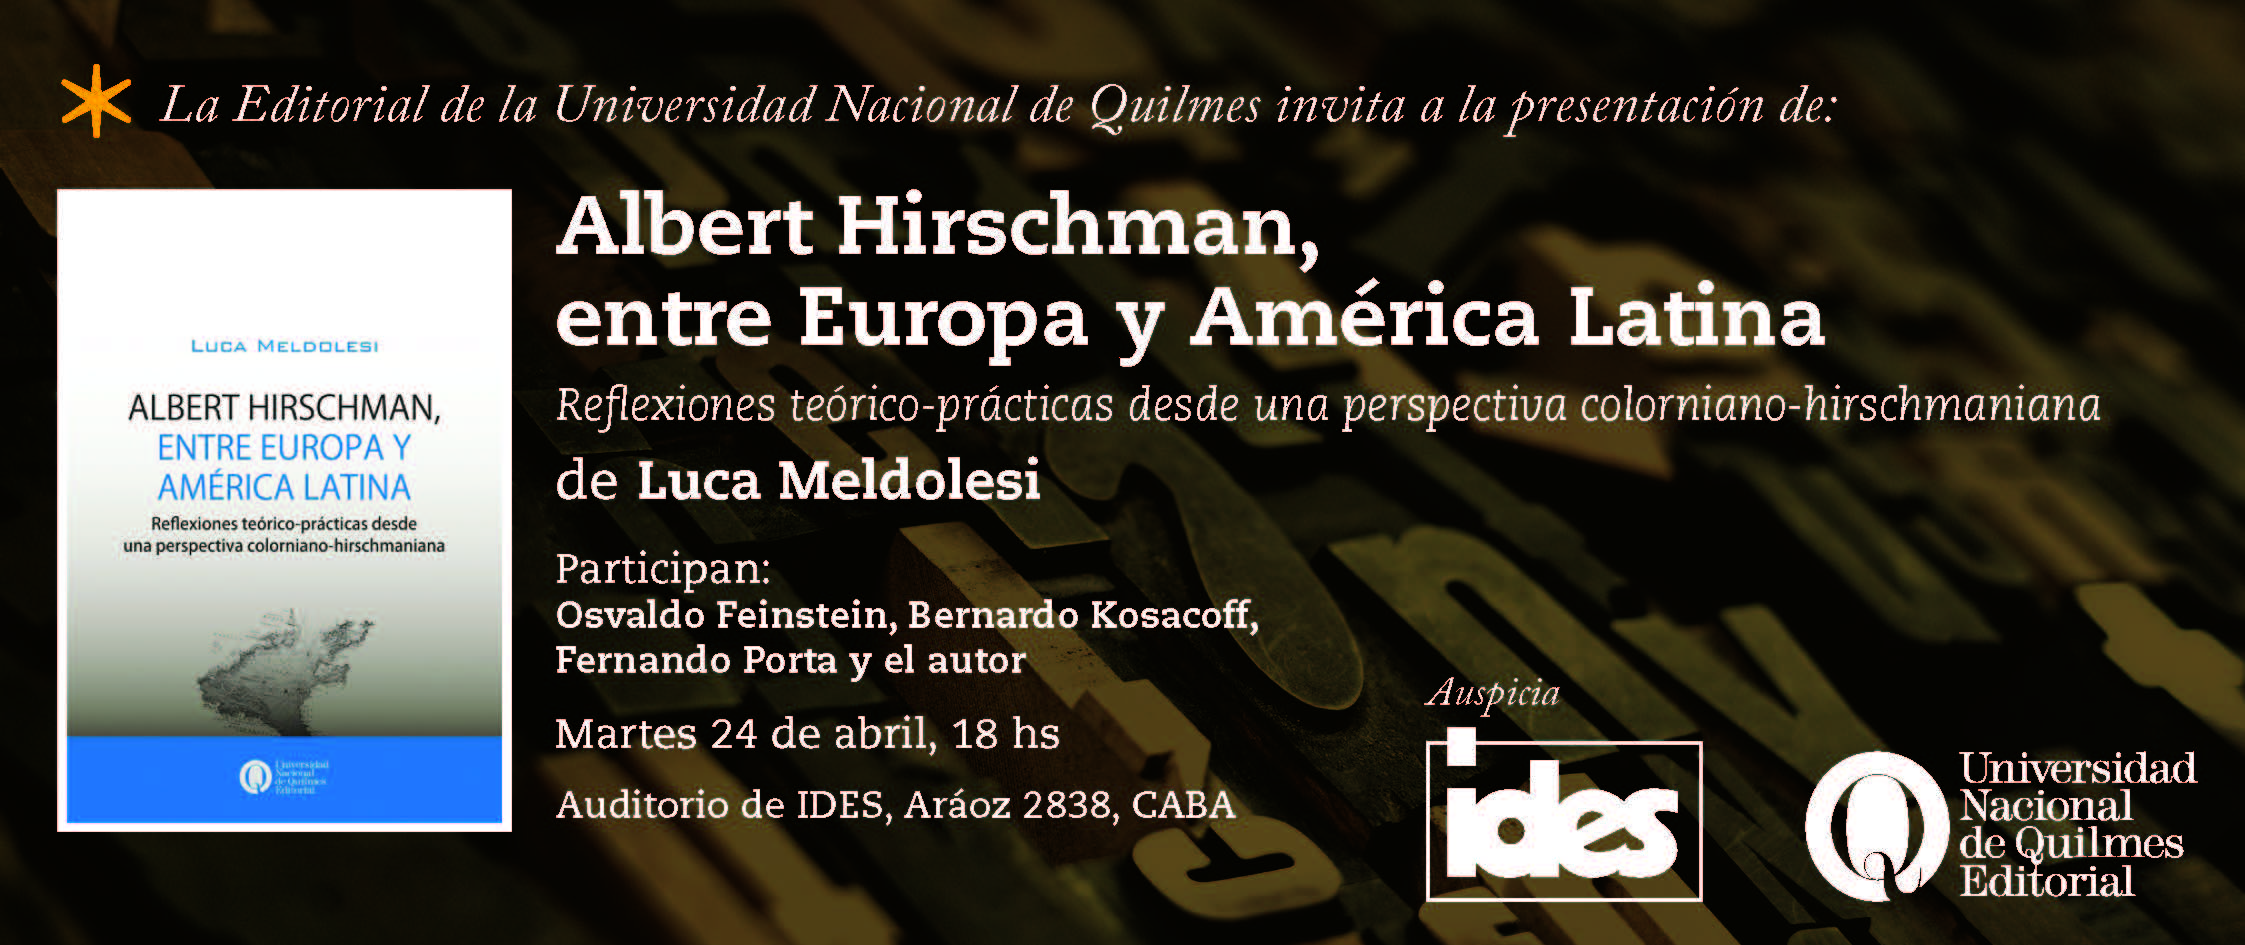 Albert Hirschman, entre Europa y América Latina. Reflexiones teórico-prácticas desde una perspectiva colorniano-hirschmaniana